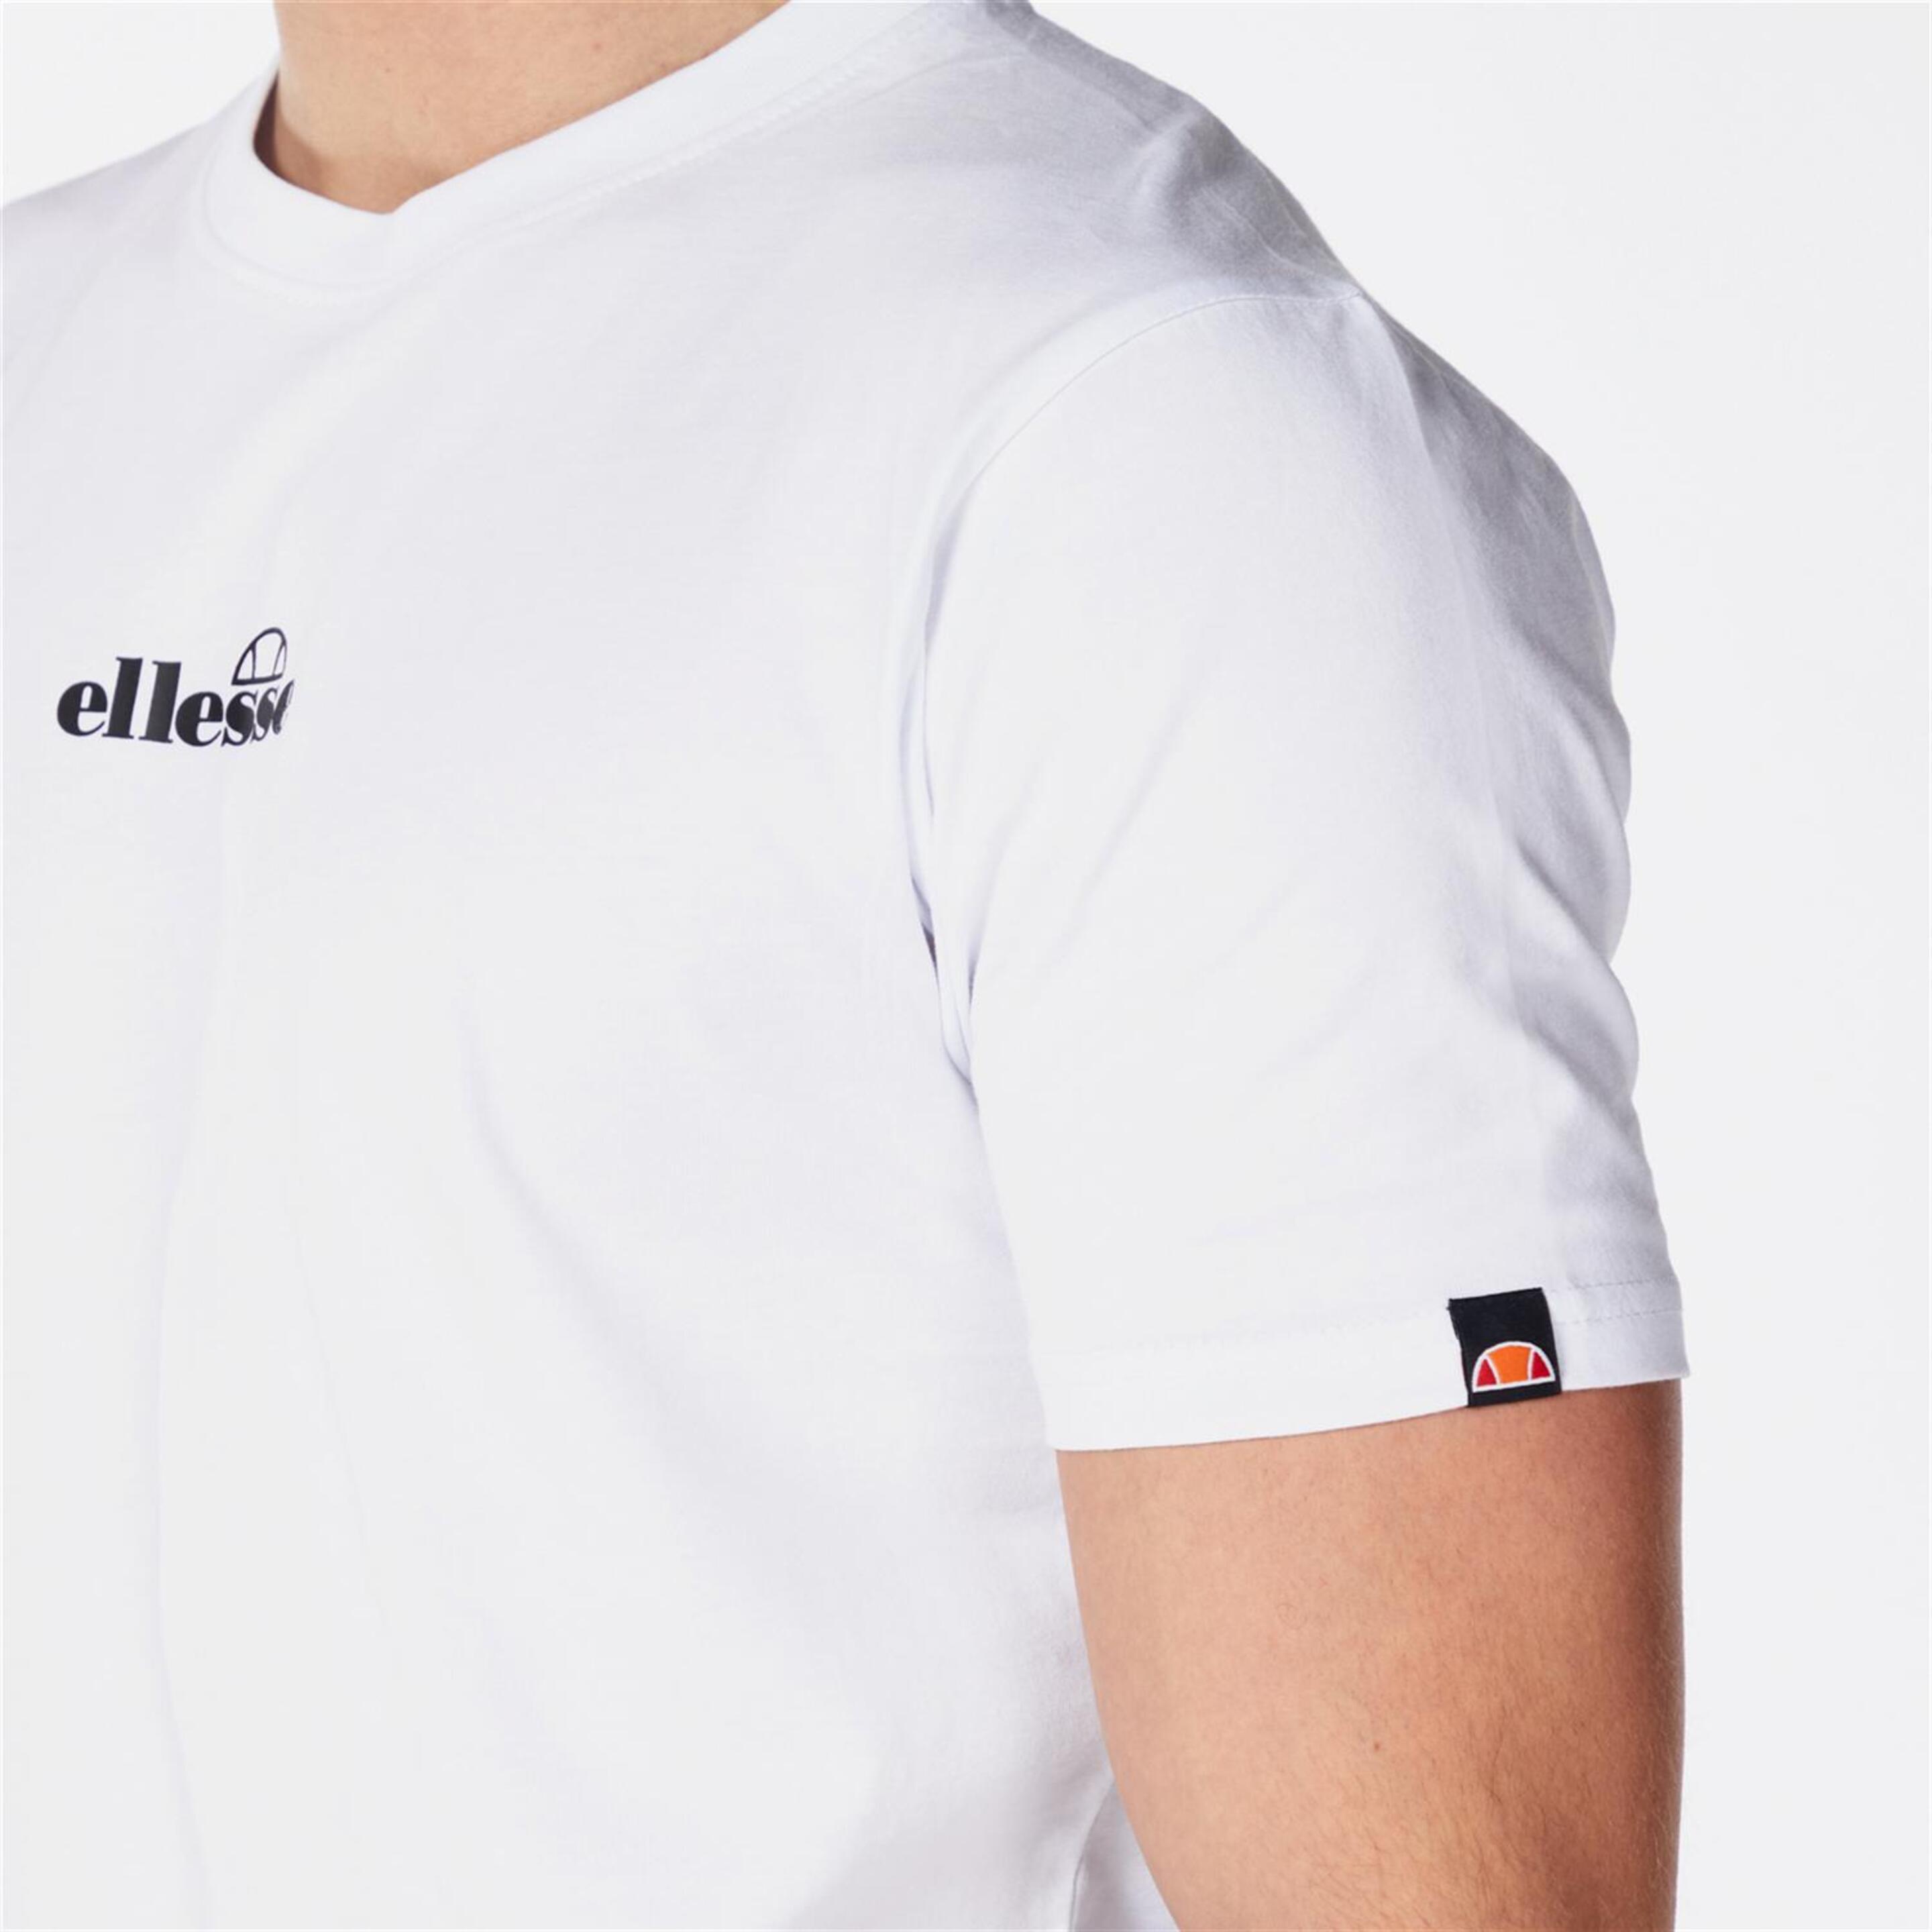 Ellesse Ollio - Blanco - Camiseta Hombre